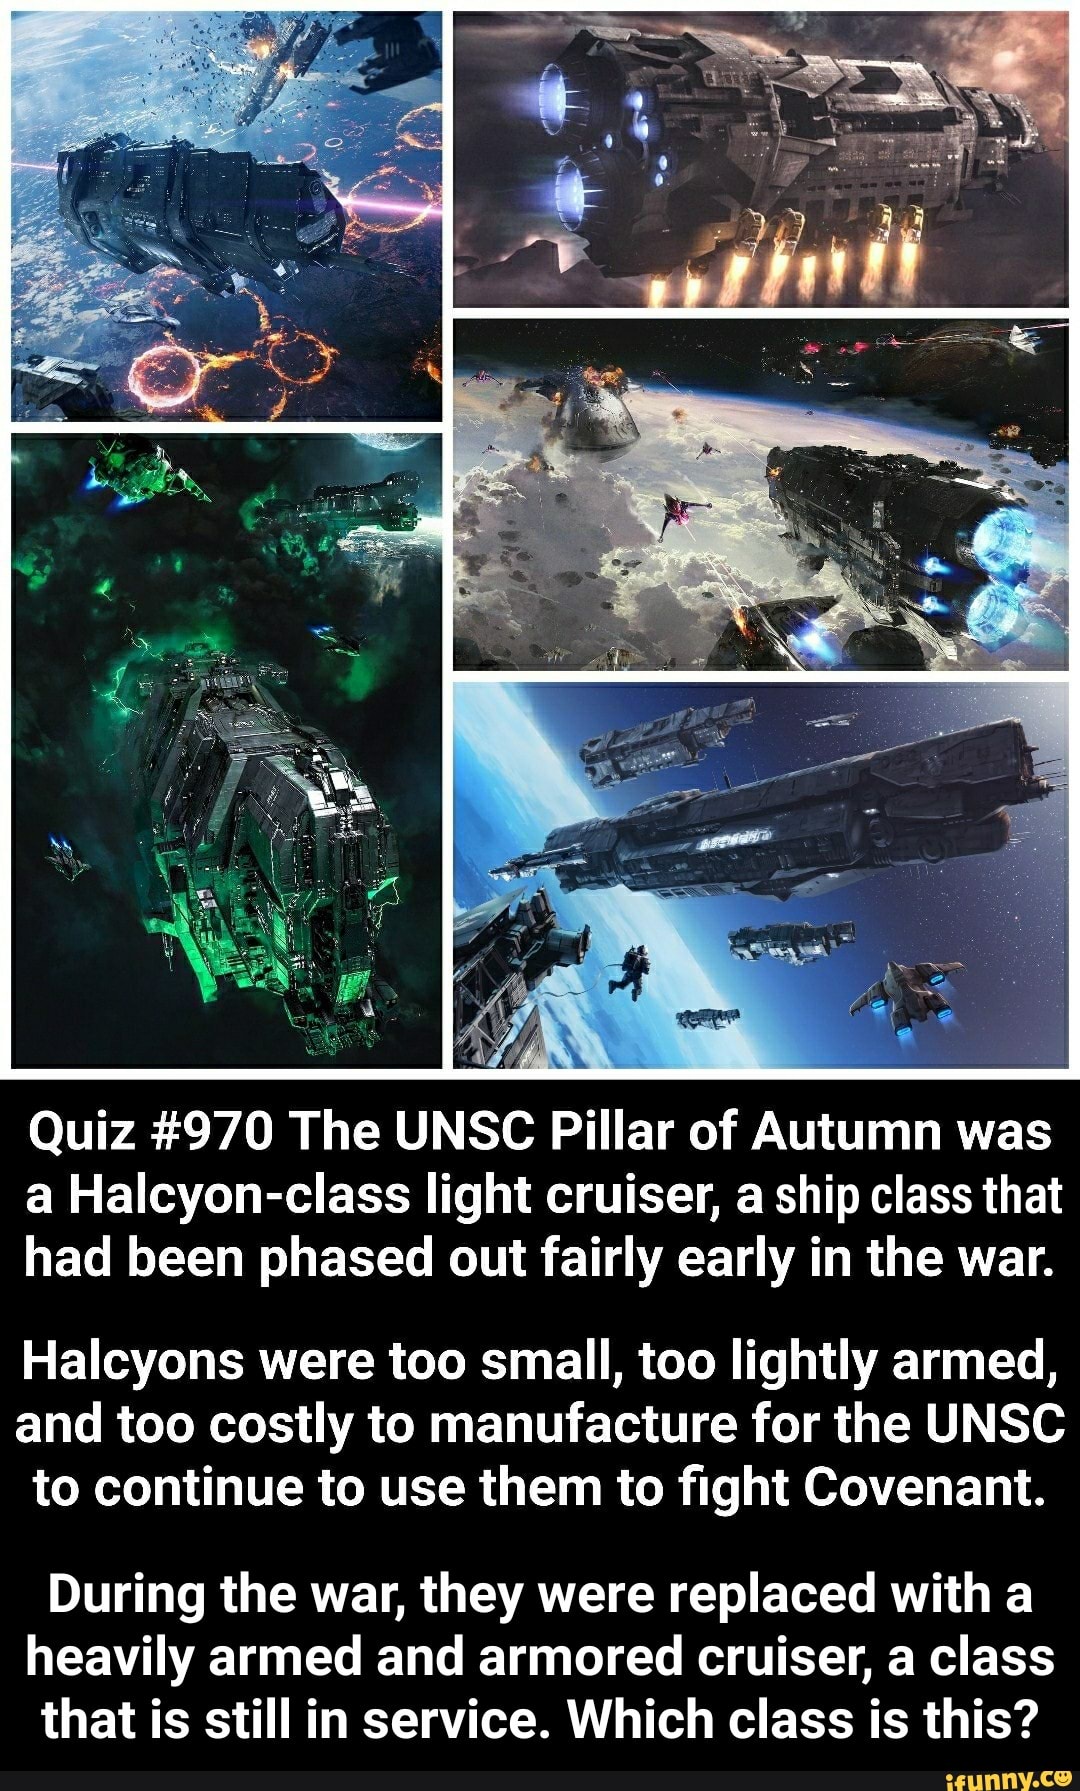 Quiz #970 The UNSC Pillar of Autumn was a Halcyon-class light cruiser ...